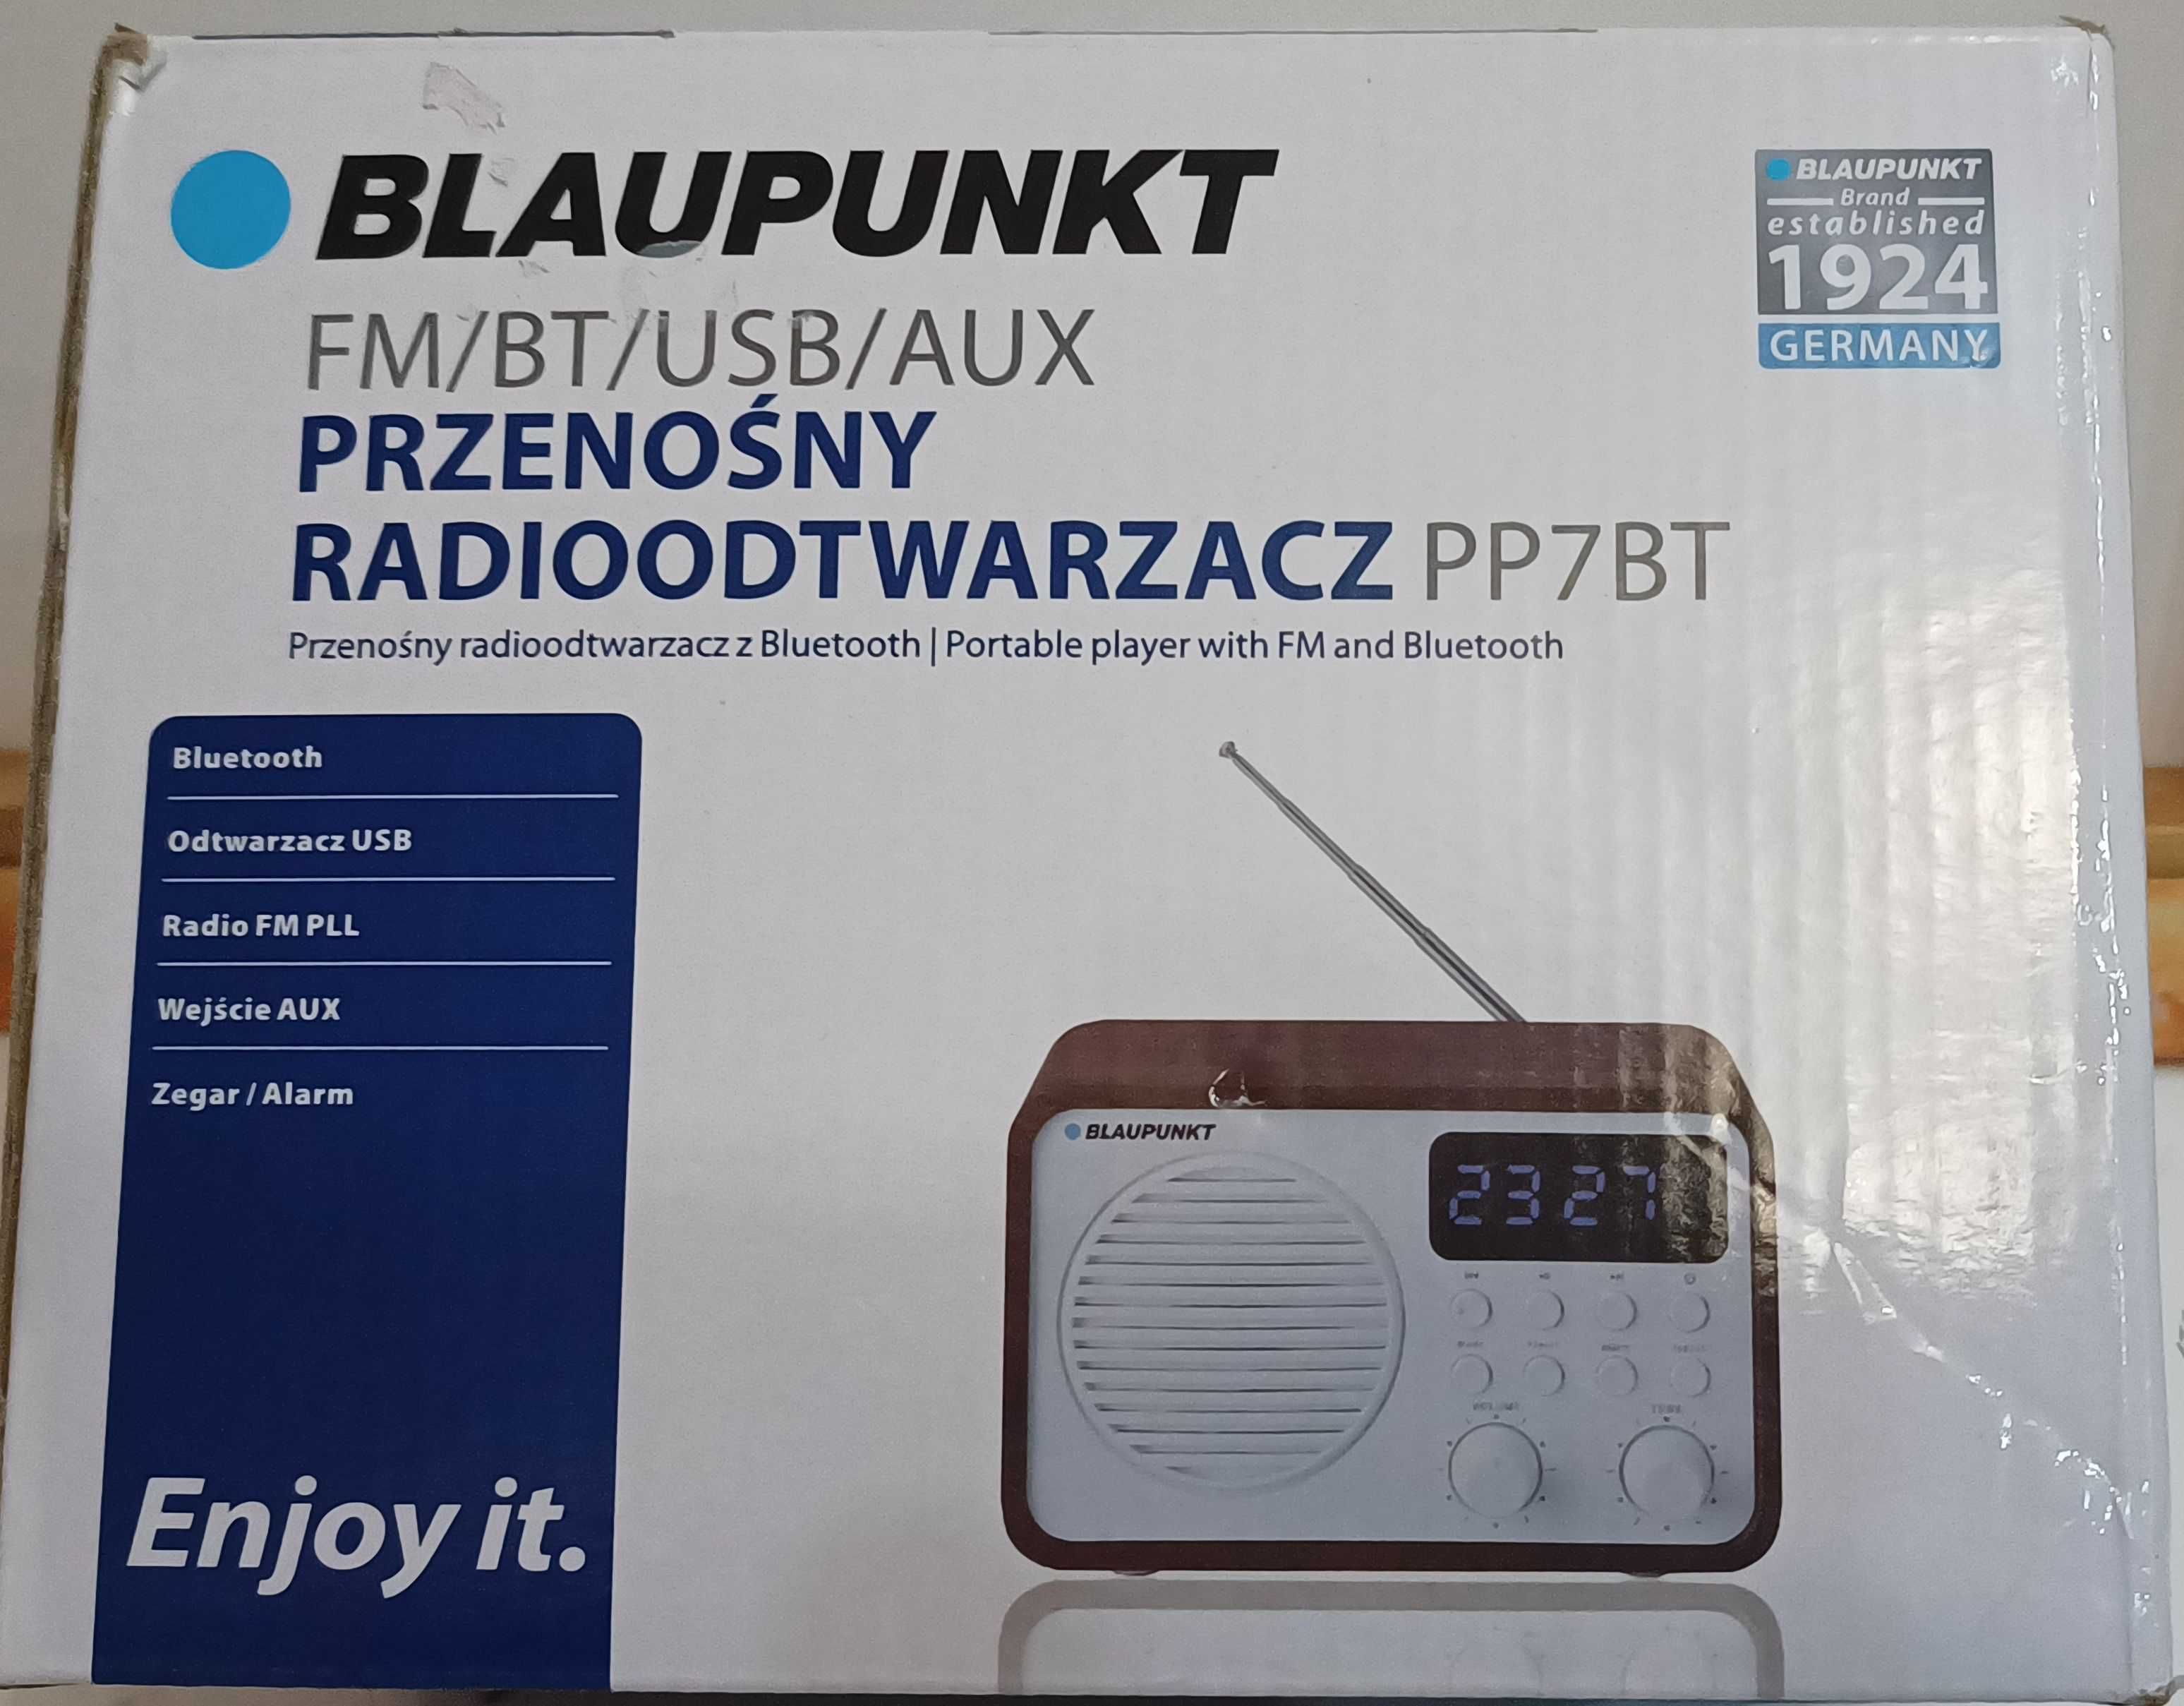 Radio FM sieciowe i bateryjne  PP7BT - Blaupunkt